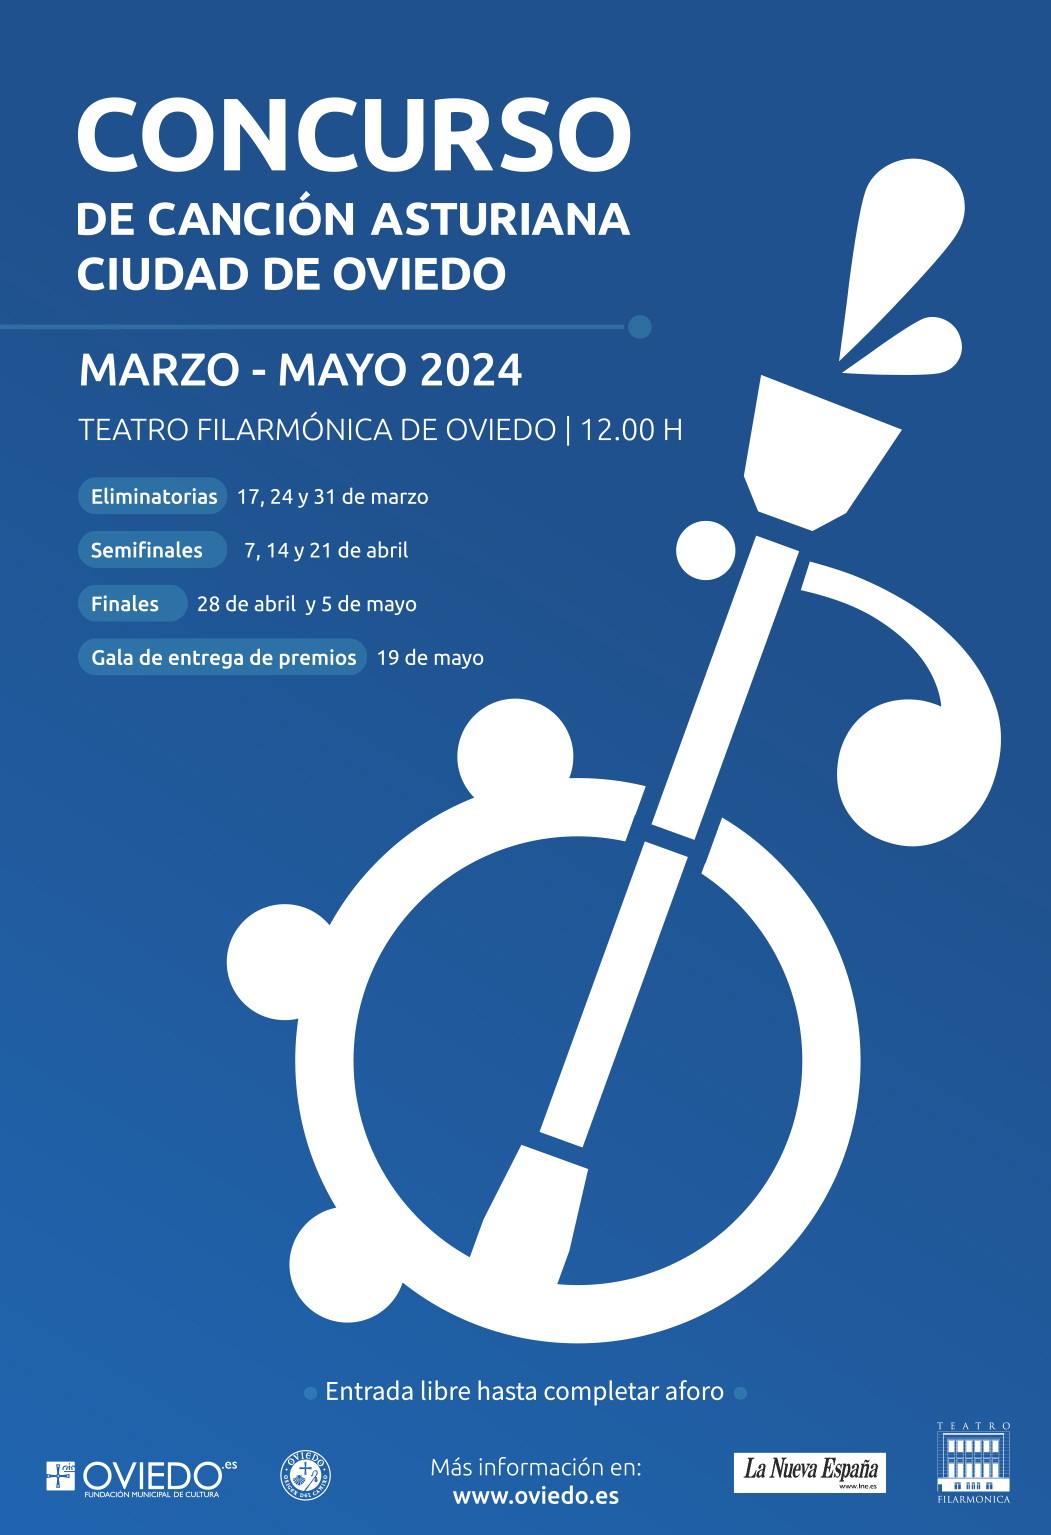 Concurso de Canción Asturiana Ciudad de Oviedo 2024. Gala de entrega de premios